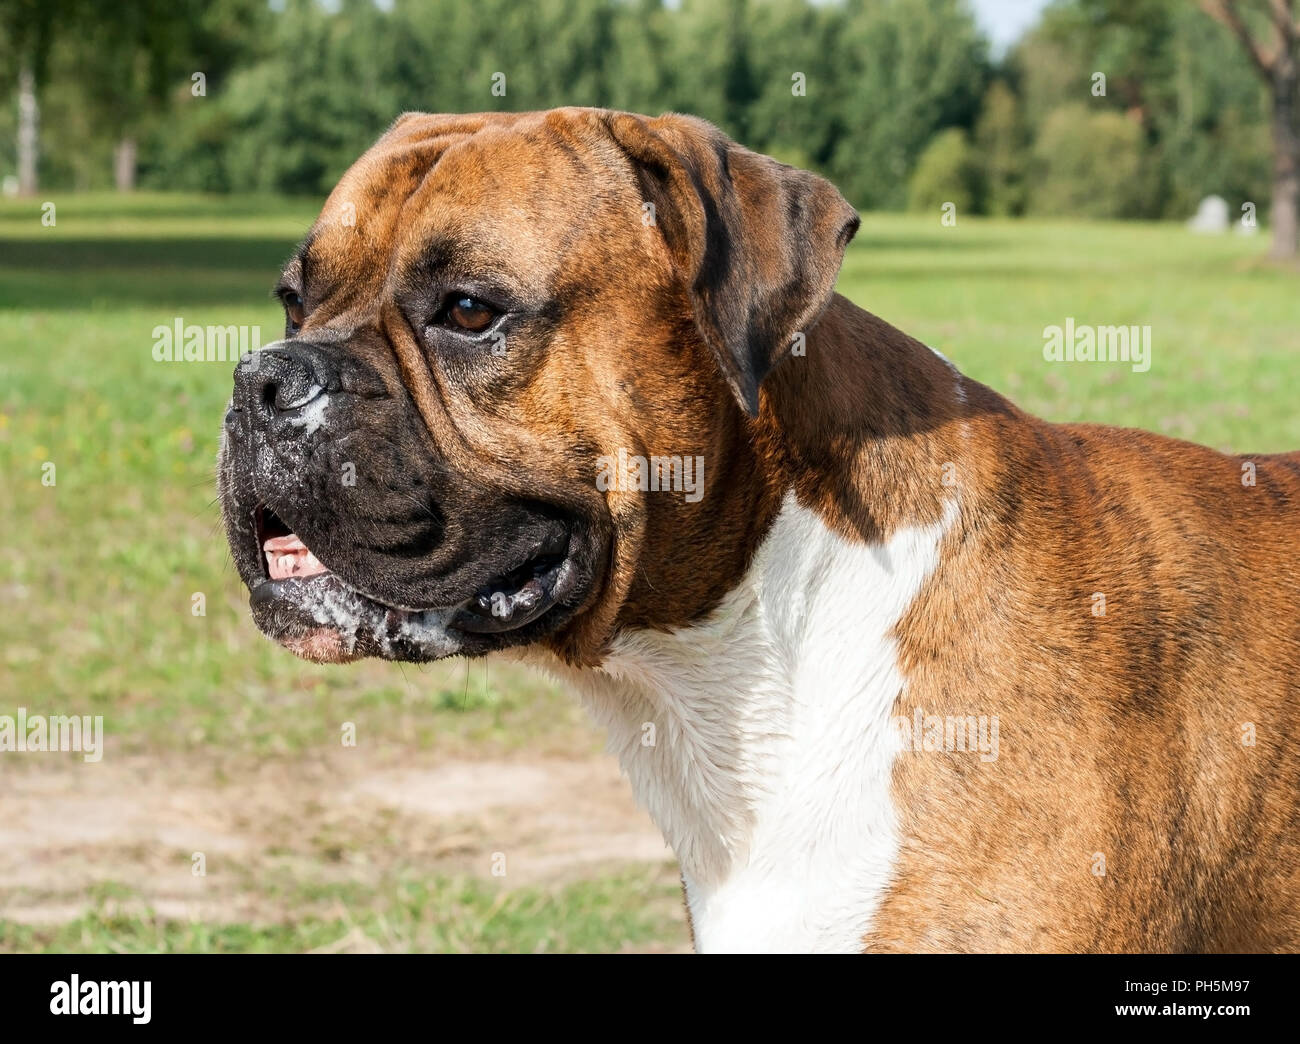 Ritratto di un cane boxer tedesche con lunghe orecchie, un muso sporco nella saliva, guarda lontano, uno sguardo da vicino, l'animale è illuminato dal sole, il campo verde Foto Stock